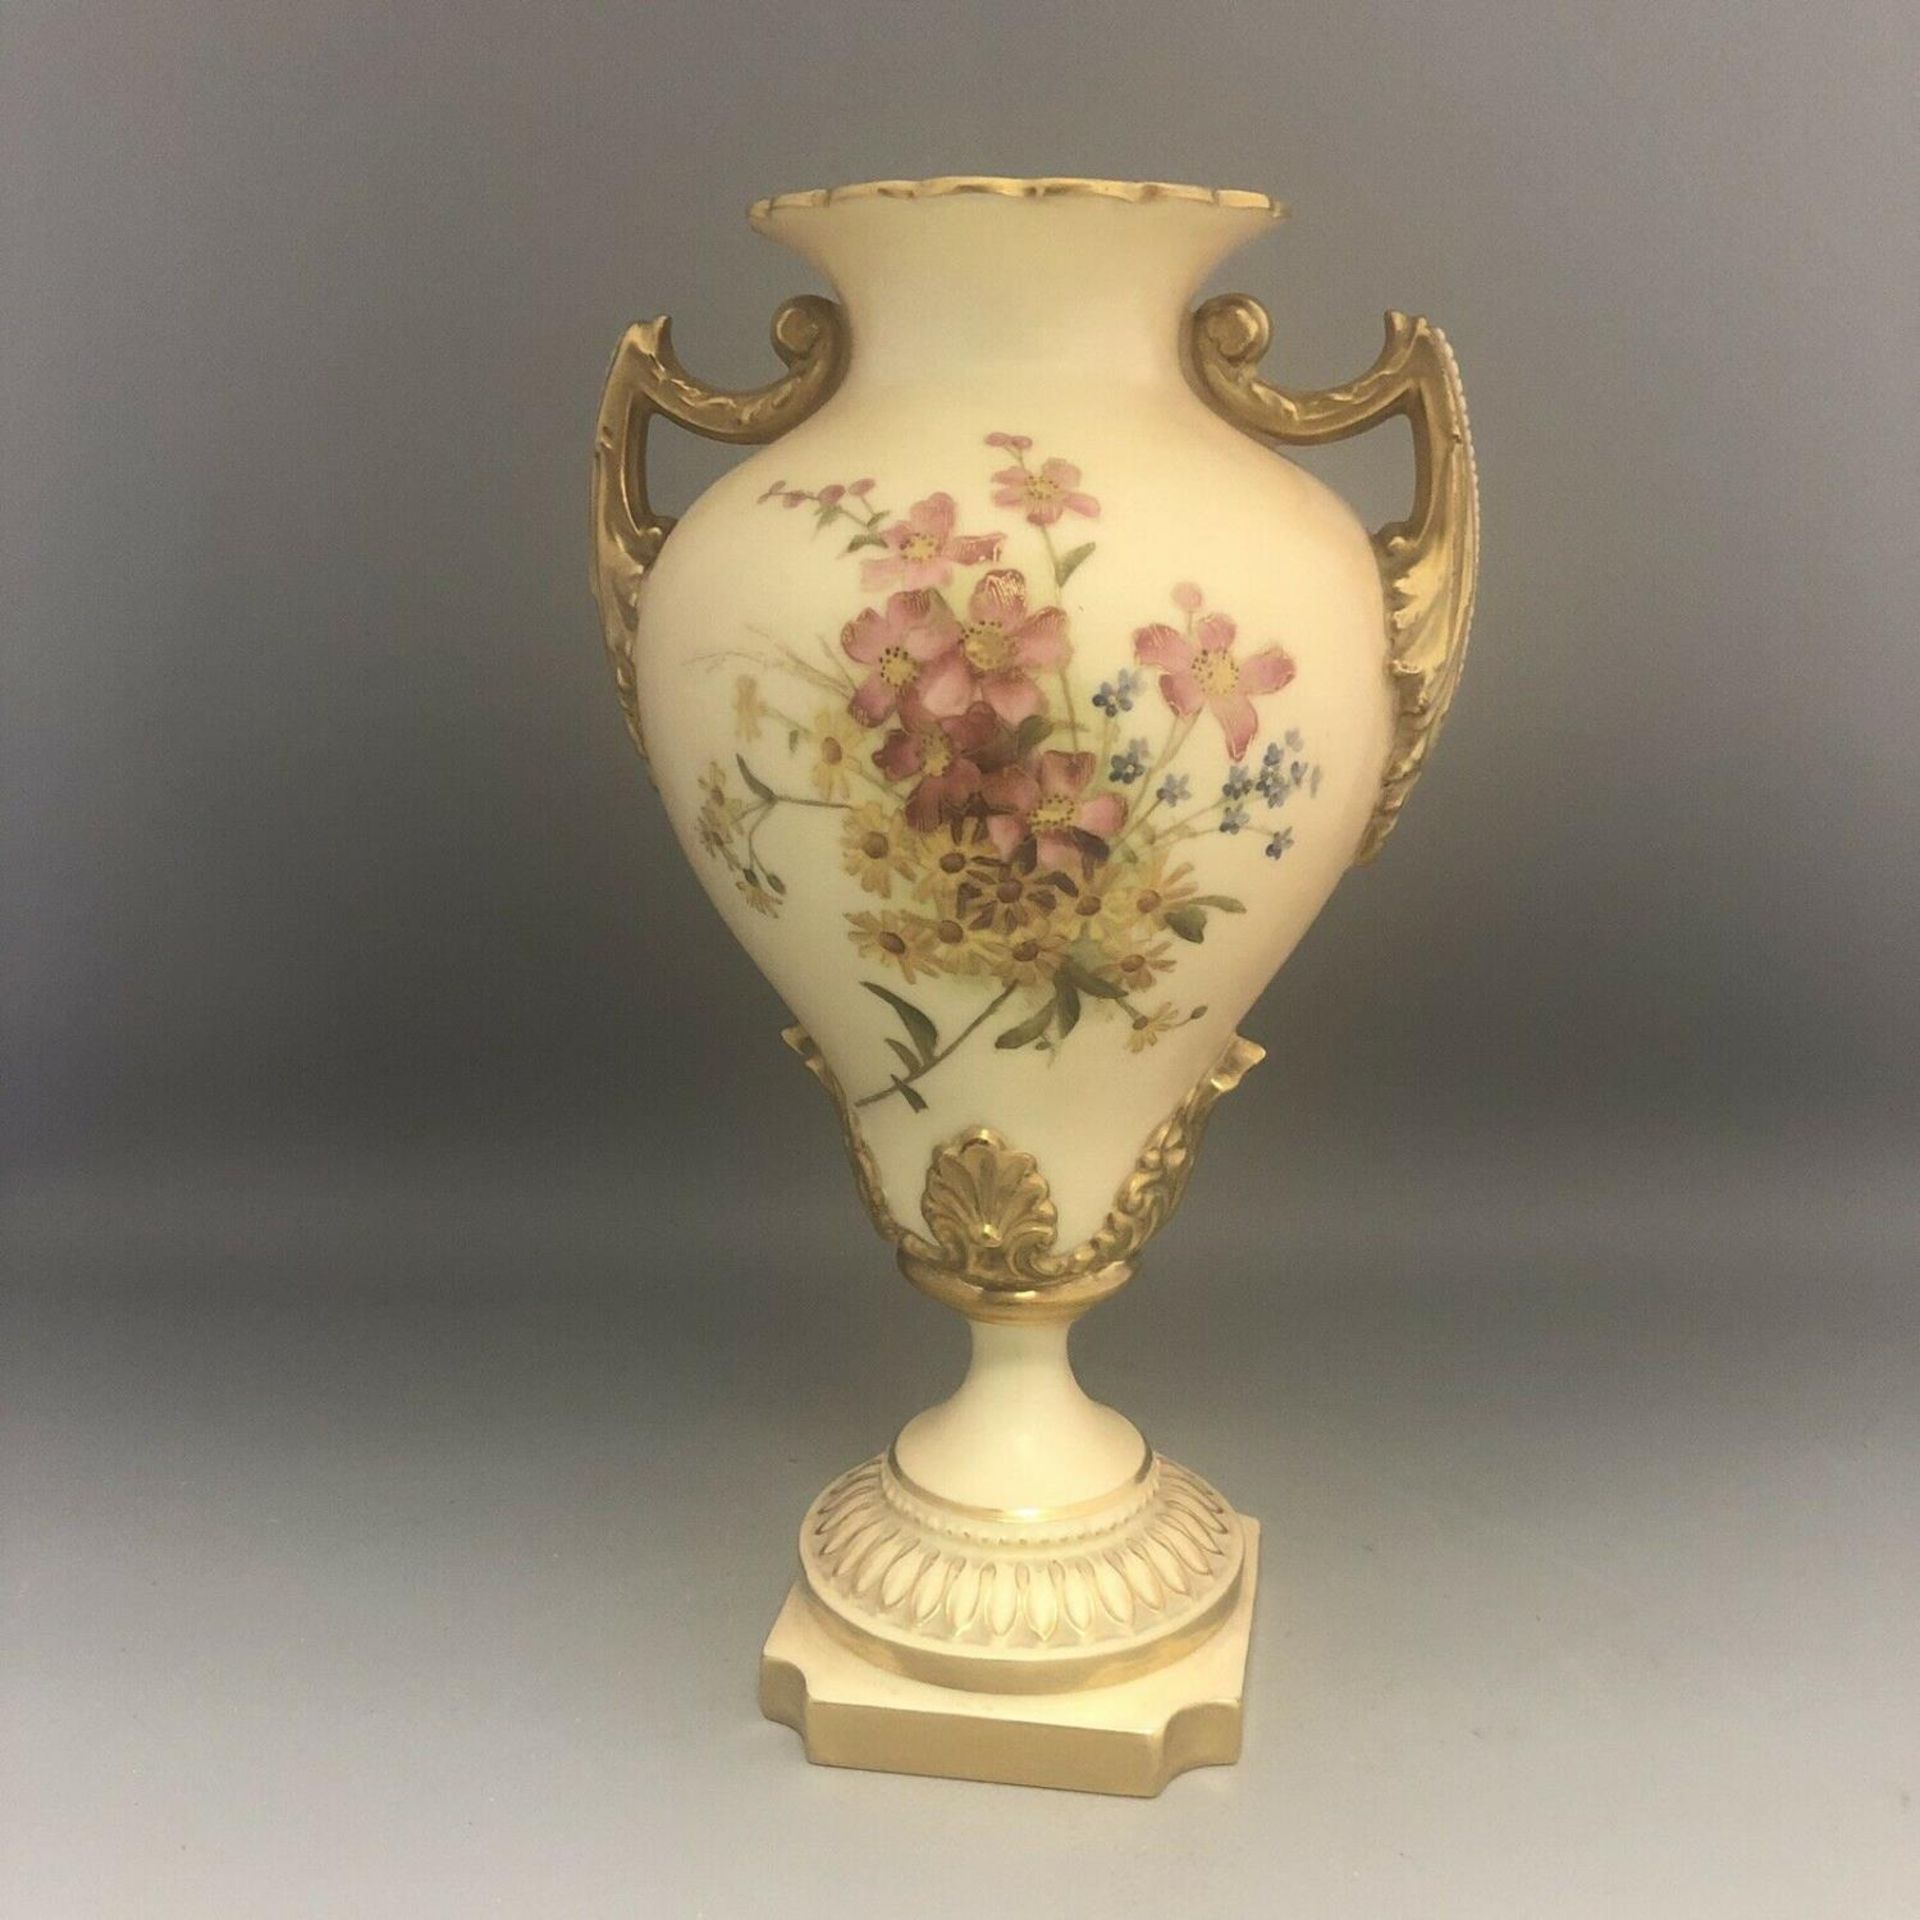 c1903, A Royal Worcester Blush Ivory Porcelain Hand Painted Flowers Pedestal Urn Vase